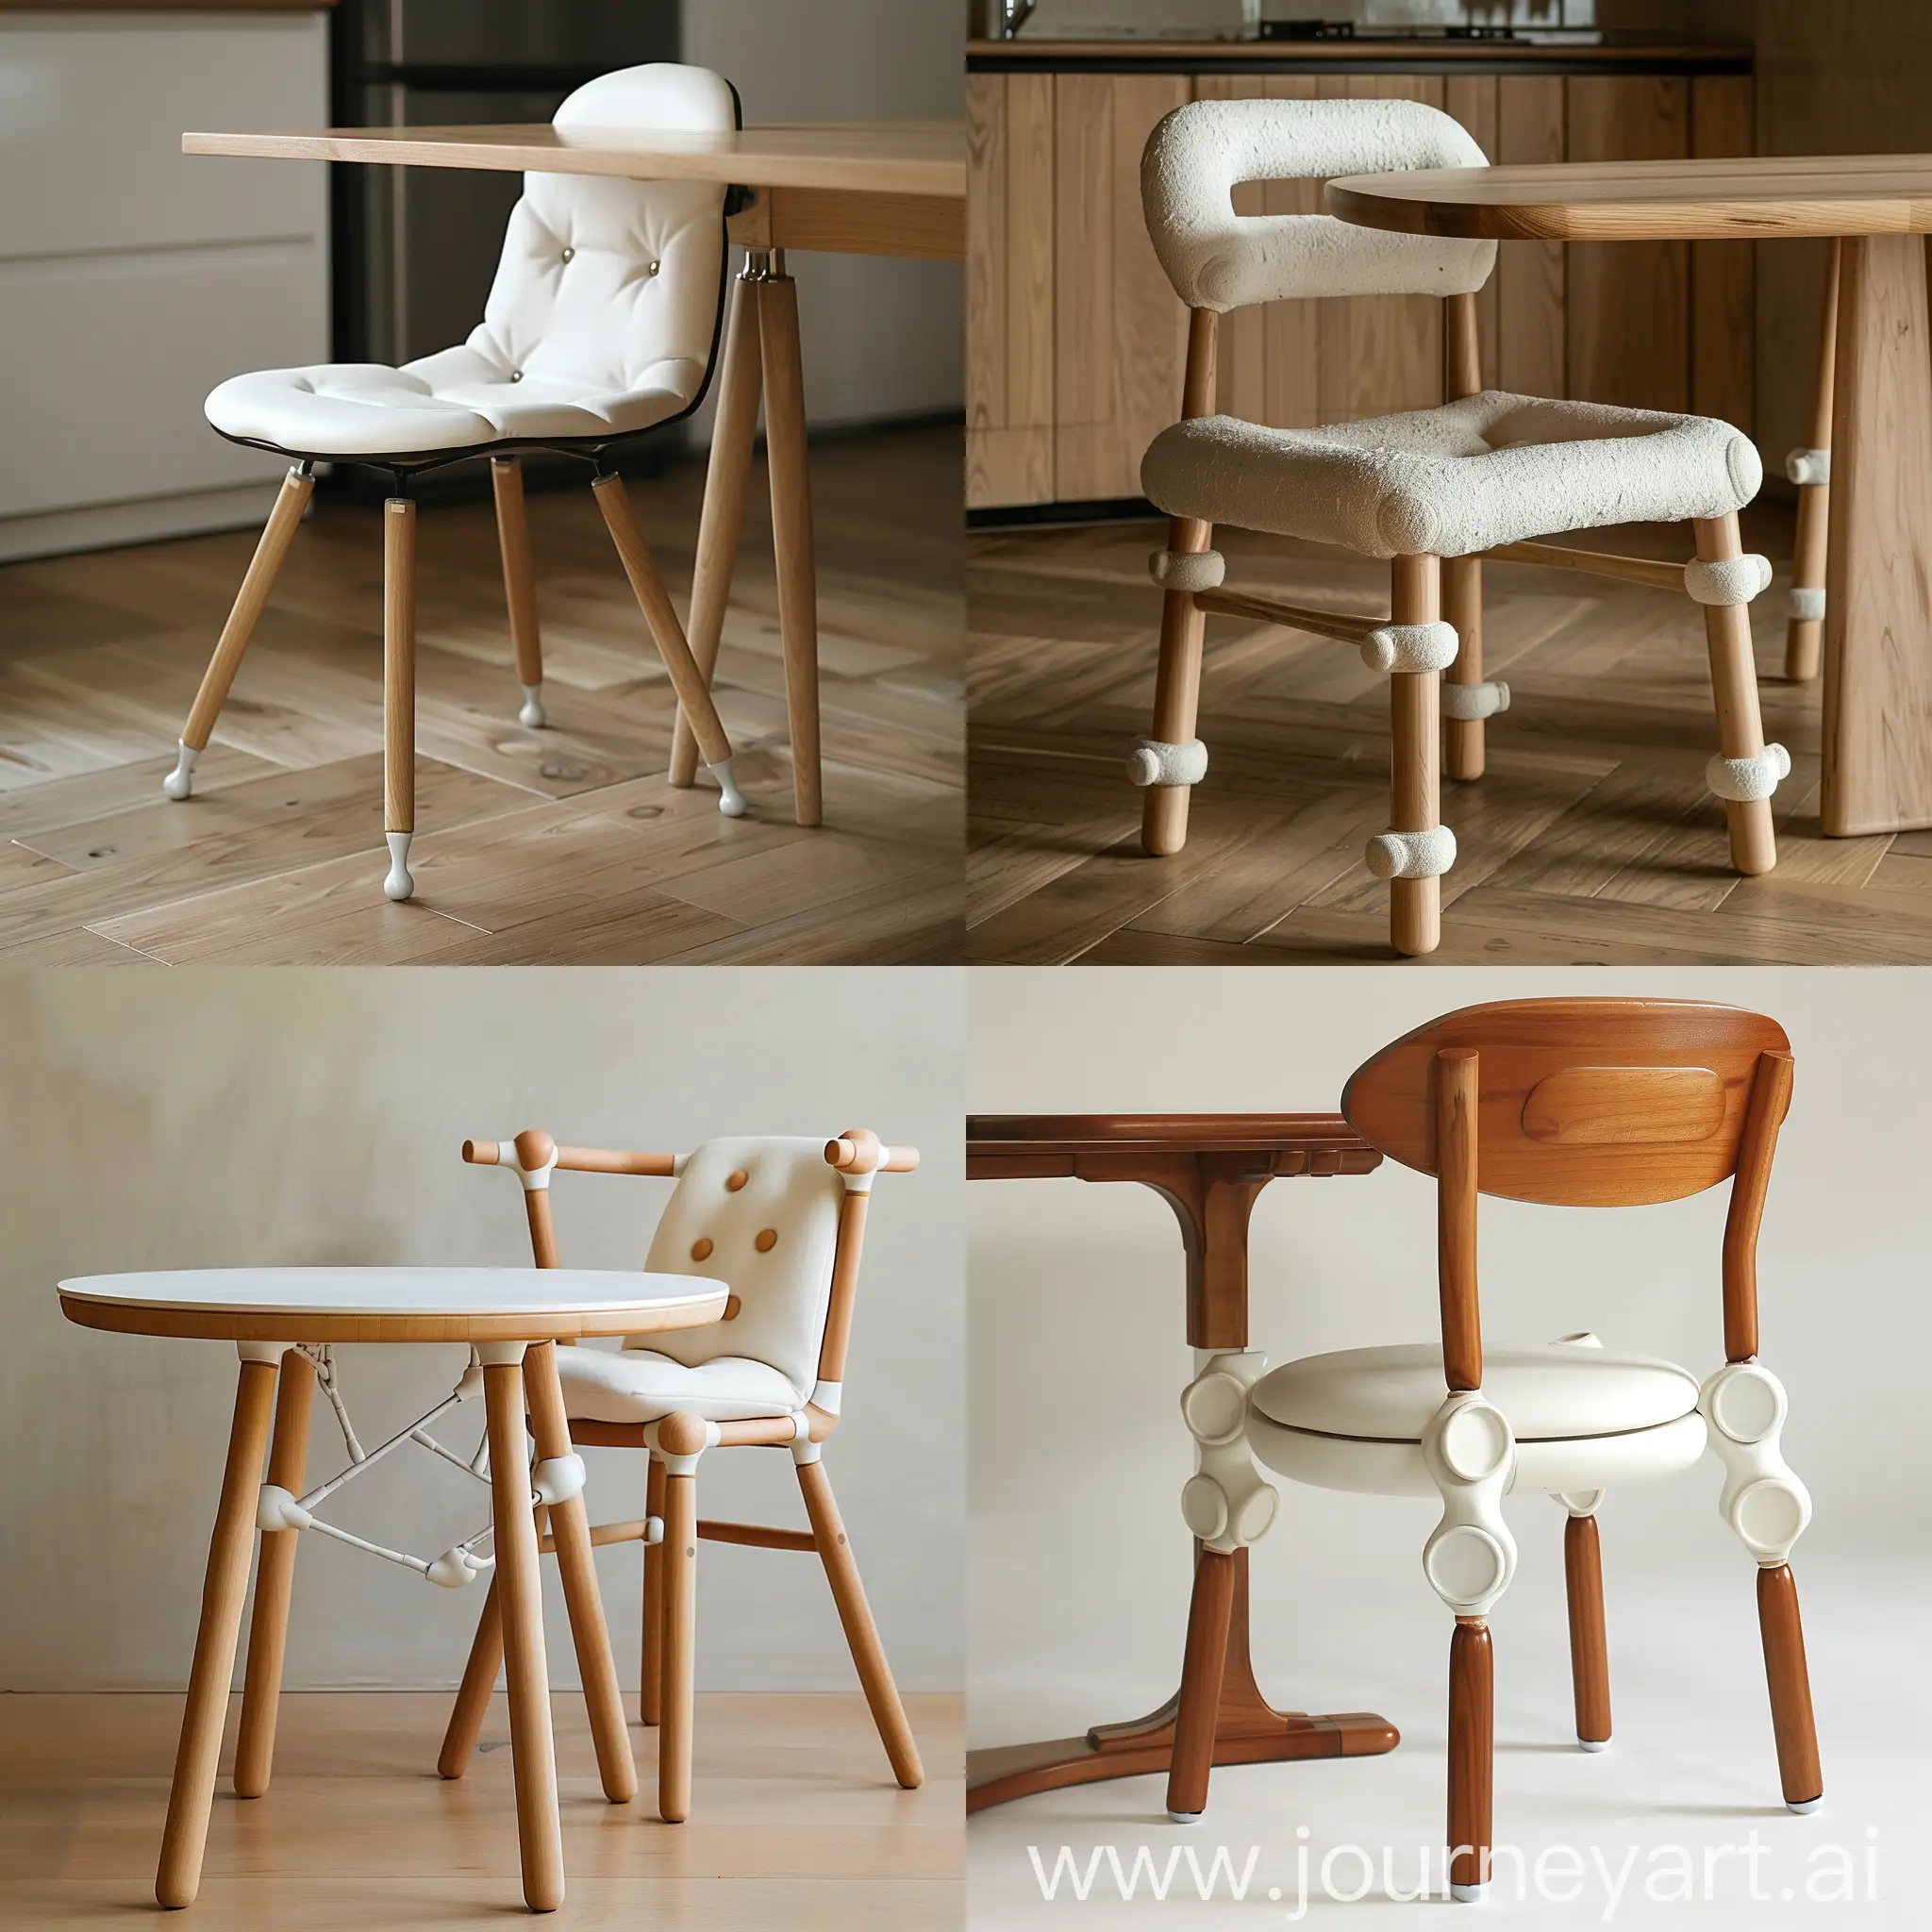 Минималистичный дизайн стула и обеденного стола, у стола и стула в ножках керамические соединения, джапанди, японский минимализм, скандинавский стиль , сиденье и спинка стула мягкие , тонкие ножки у стула и стола, плавные линии